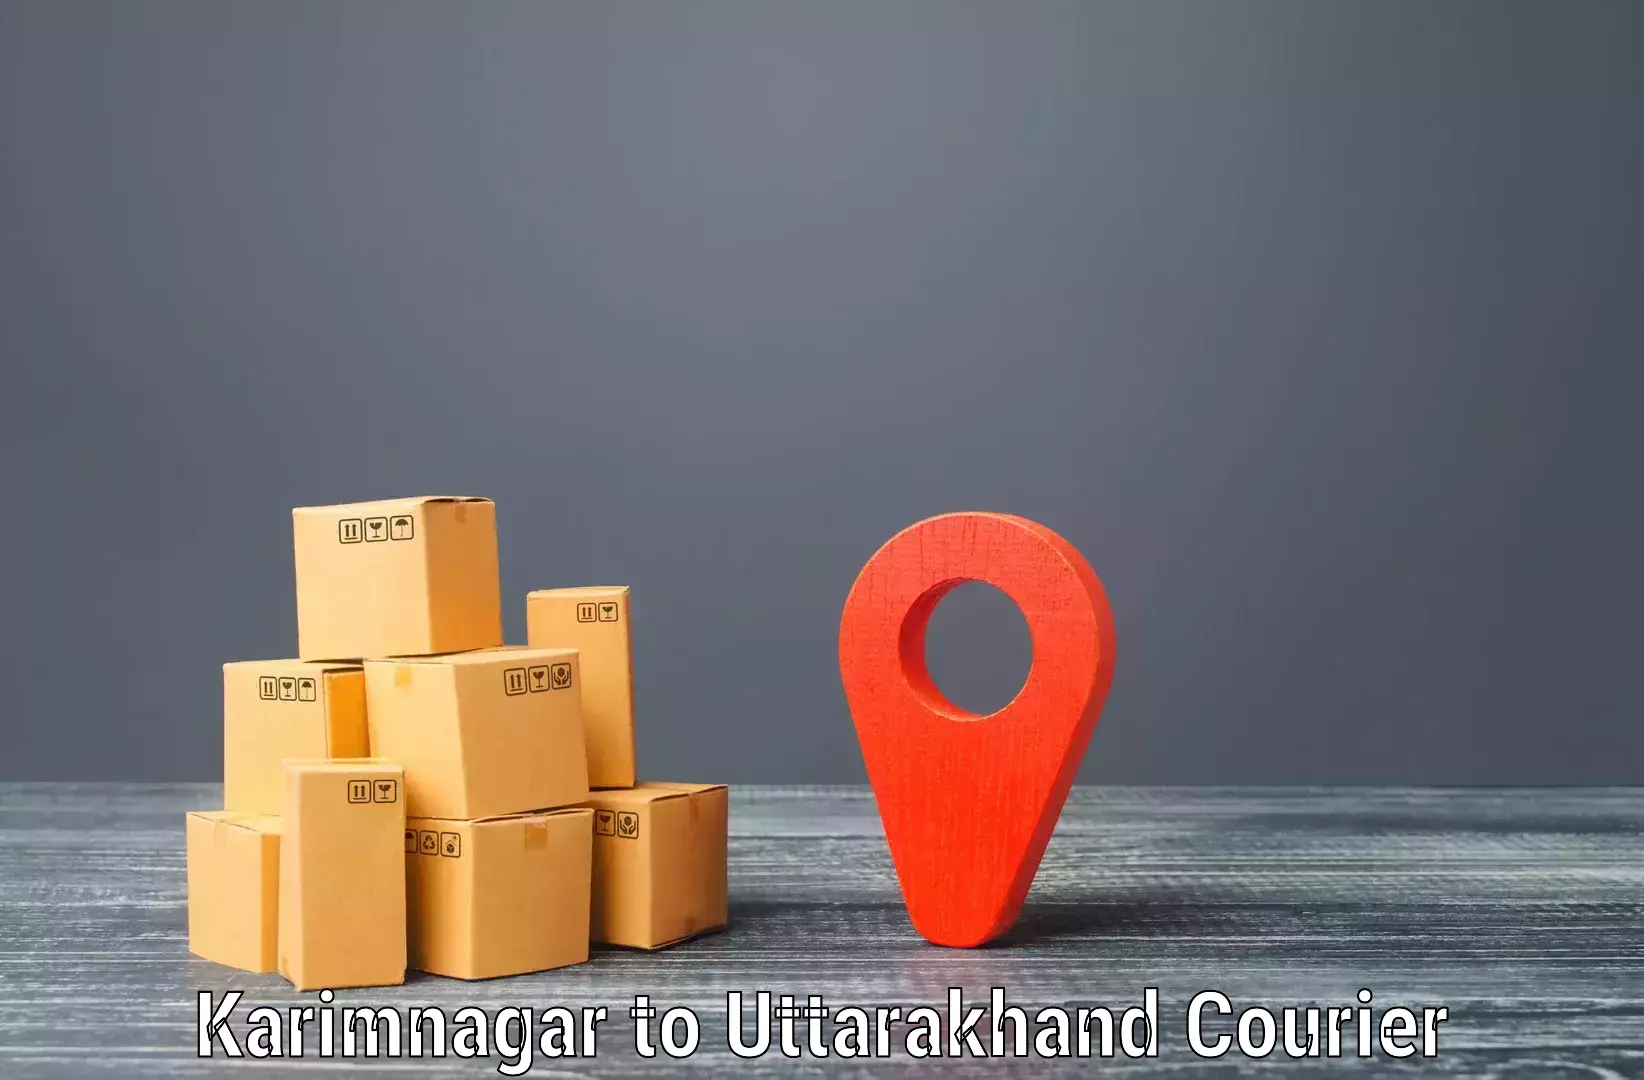 Custom shipping services in Karimnagar to Nainital